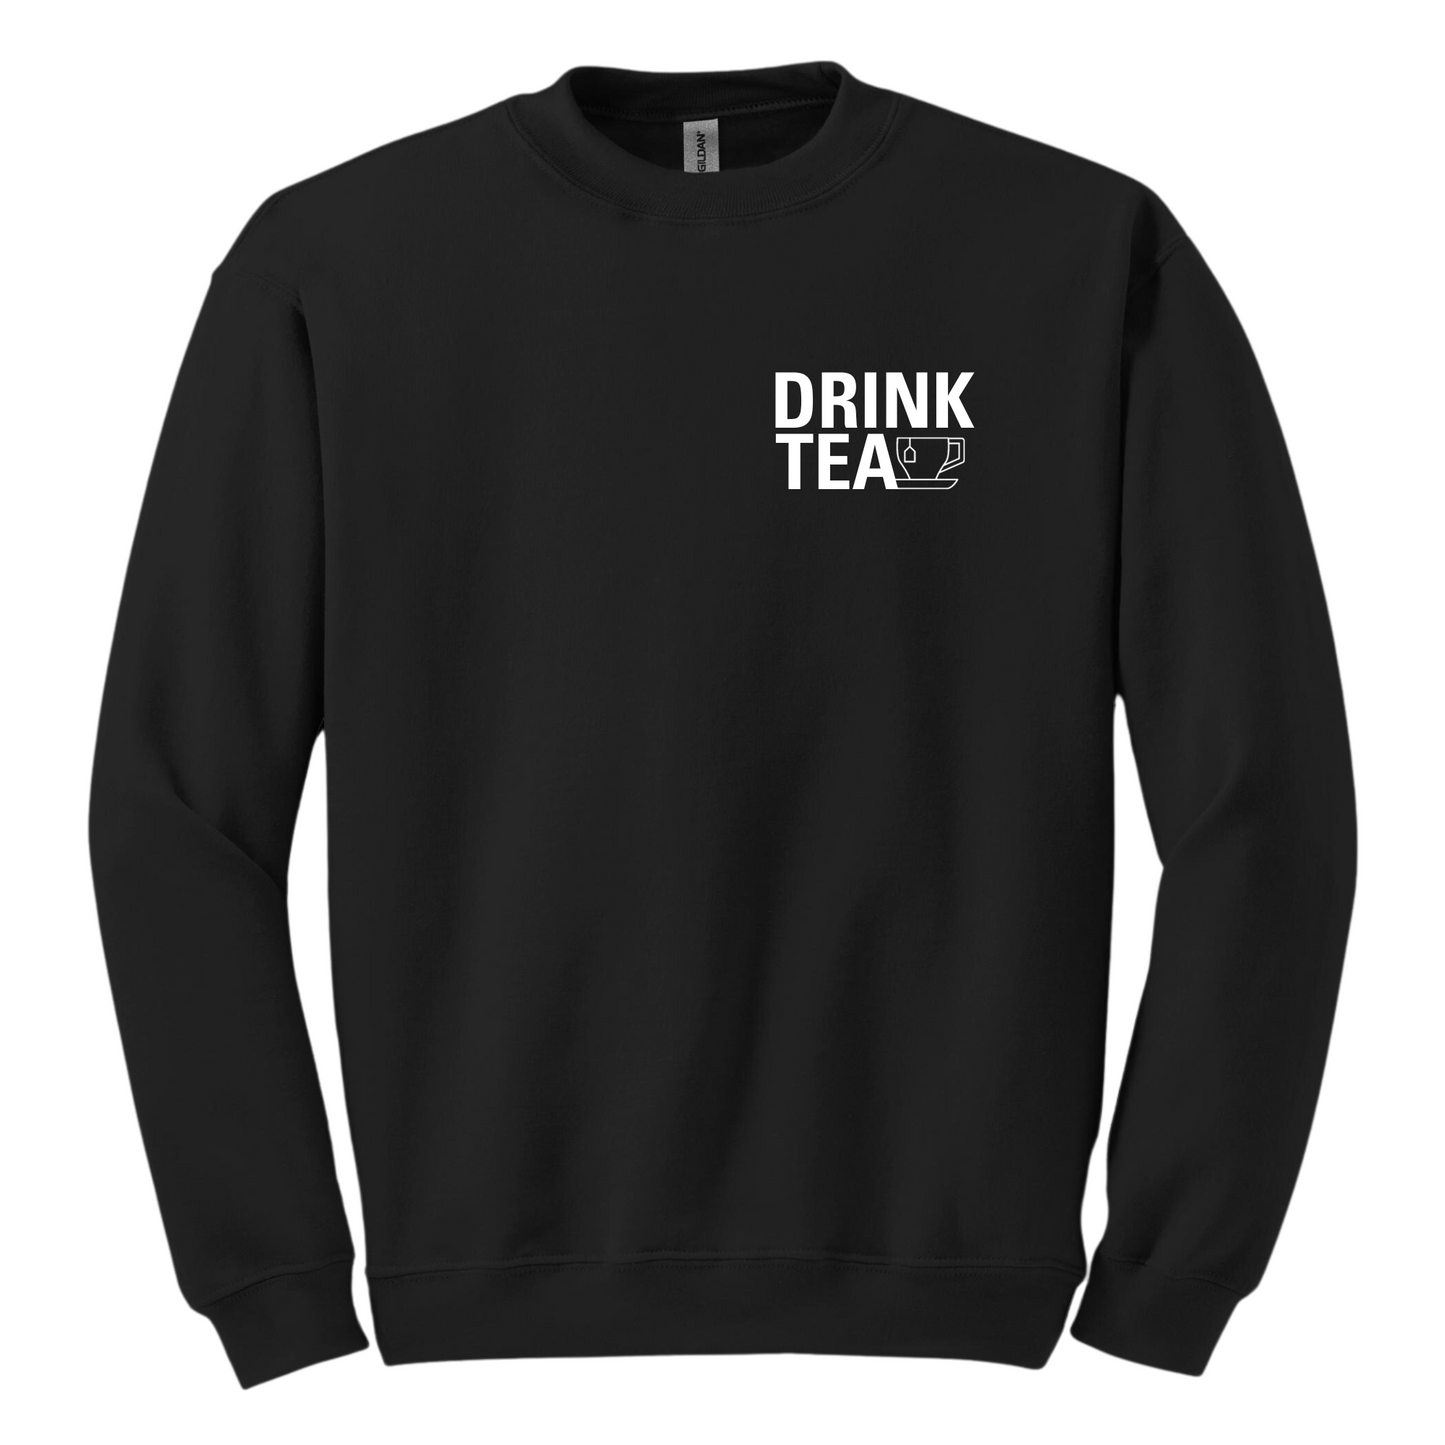 DRINK TEA CREW